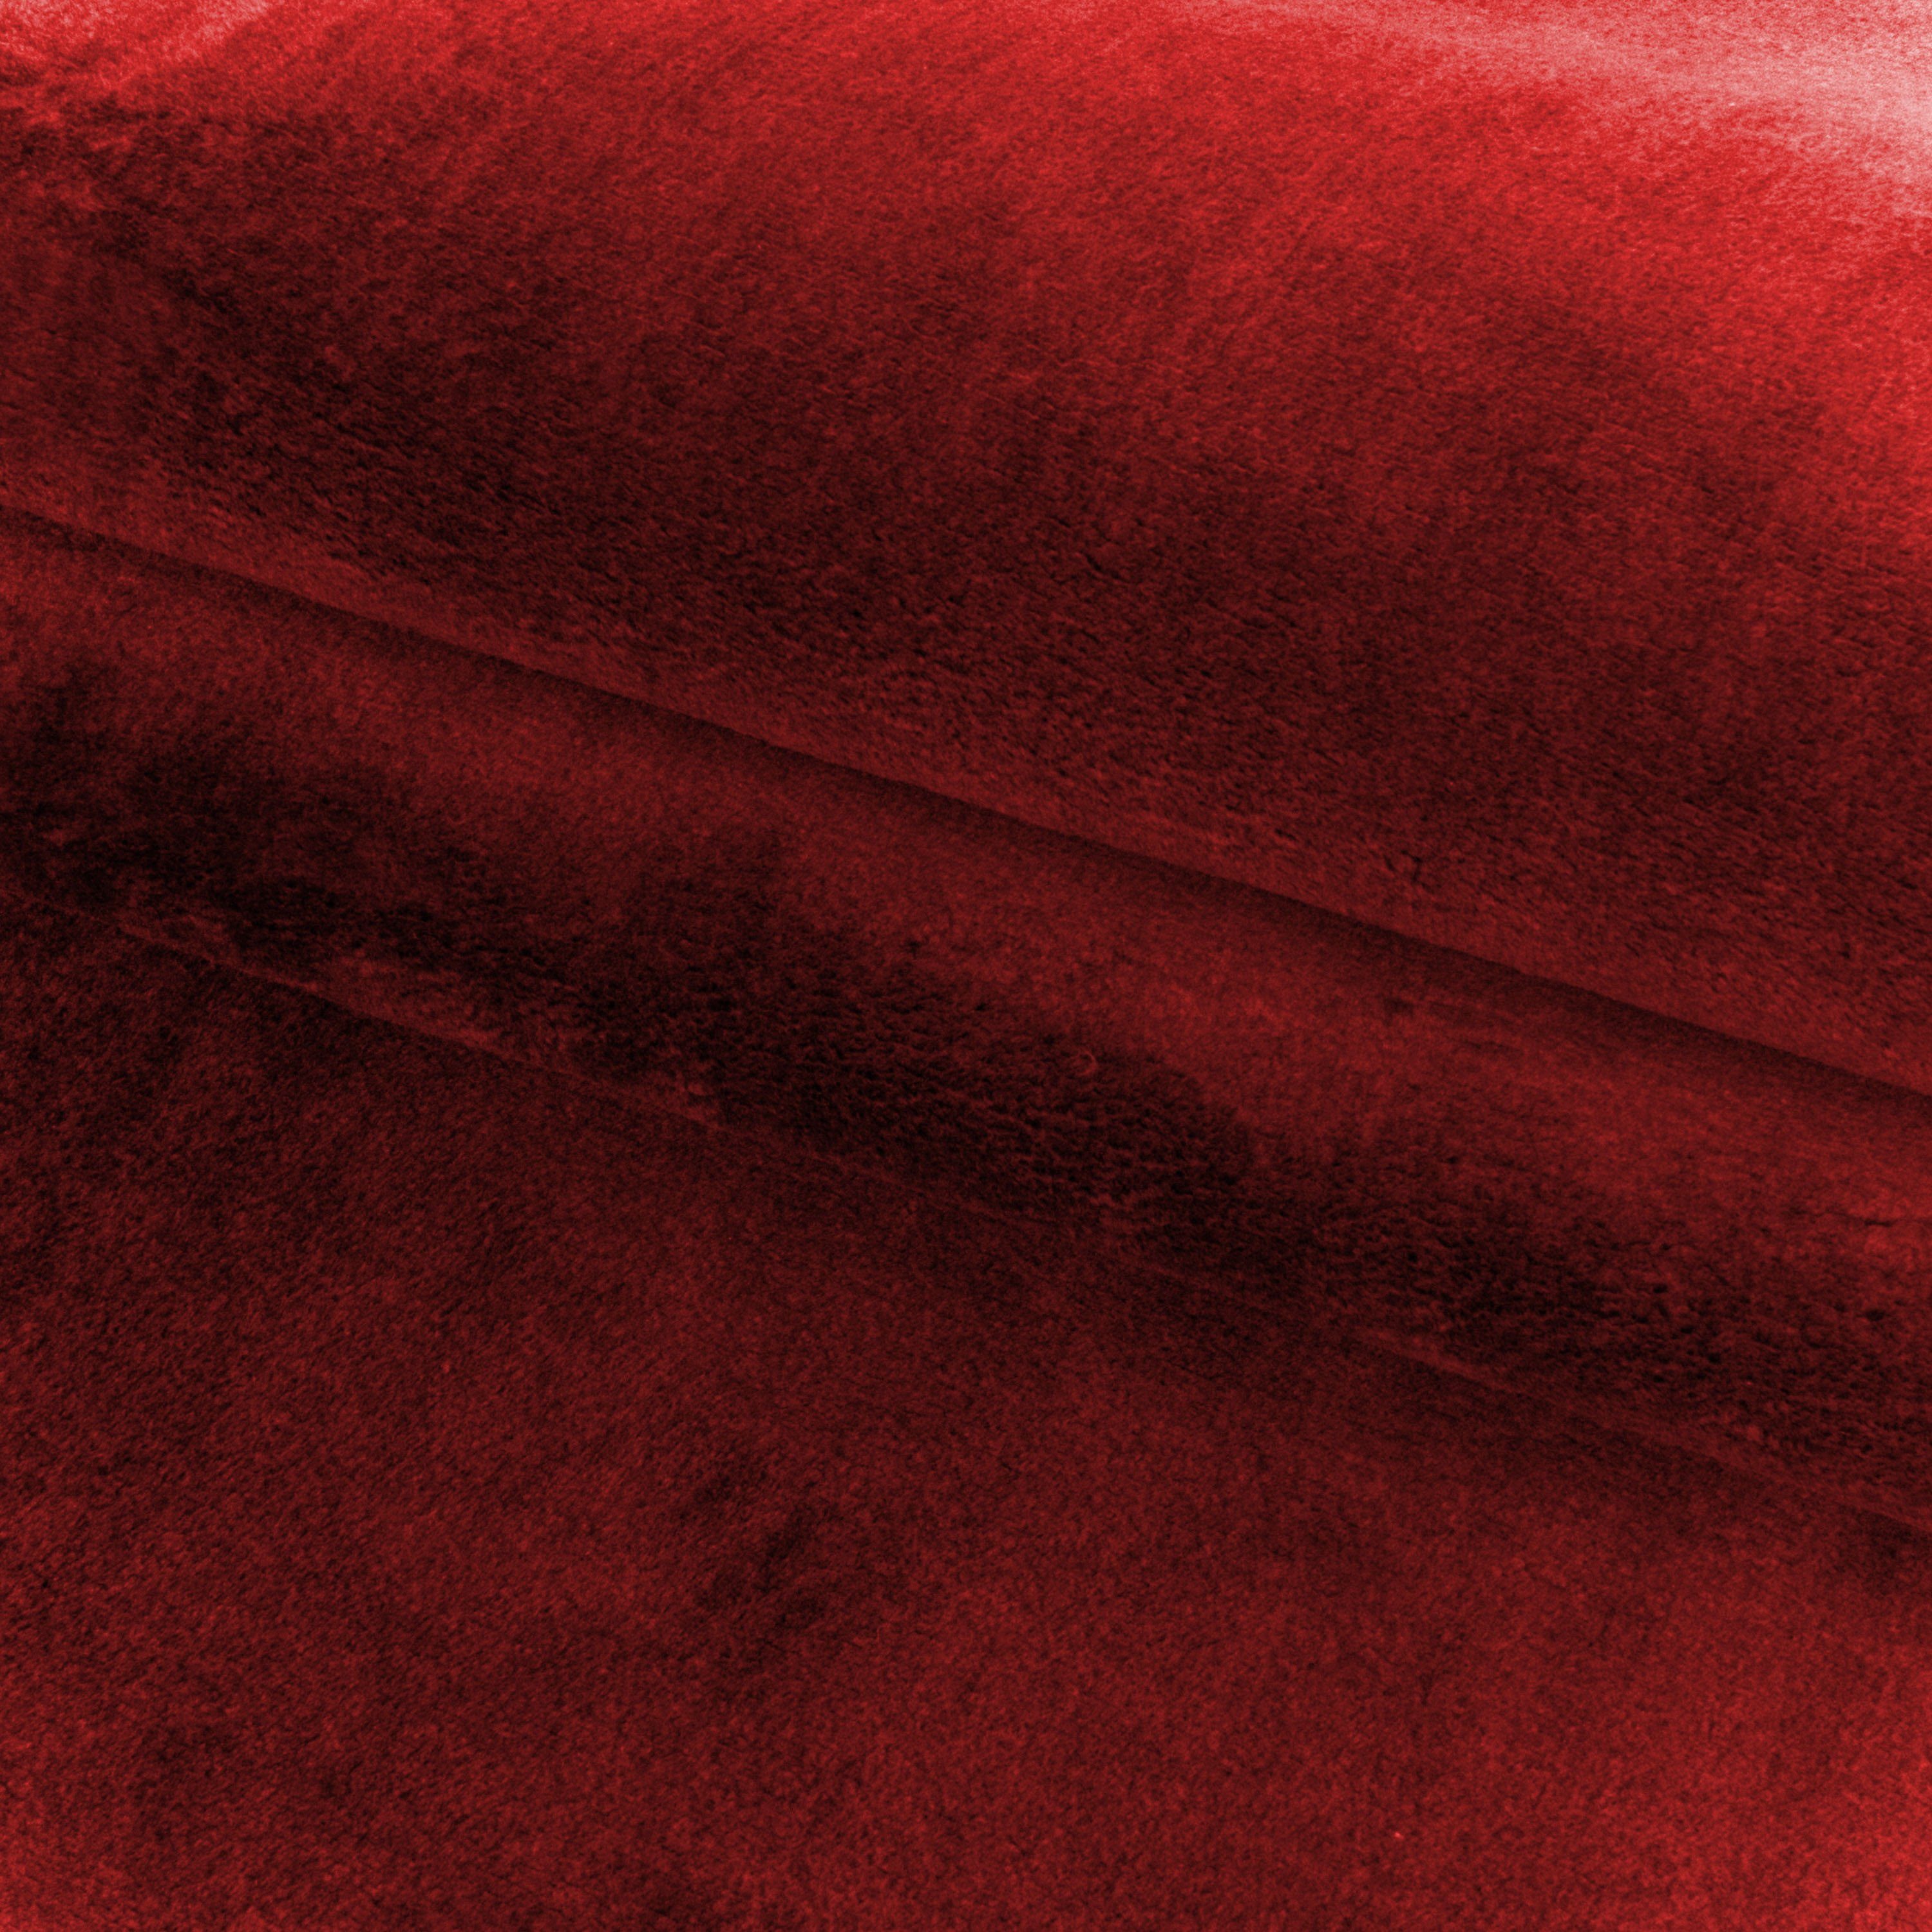 Angeycasa, Microfaser, Schlafzimmer Wohnzimmer, Flachflor Teppich Kurzflor Rot